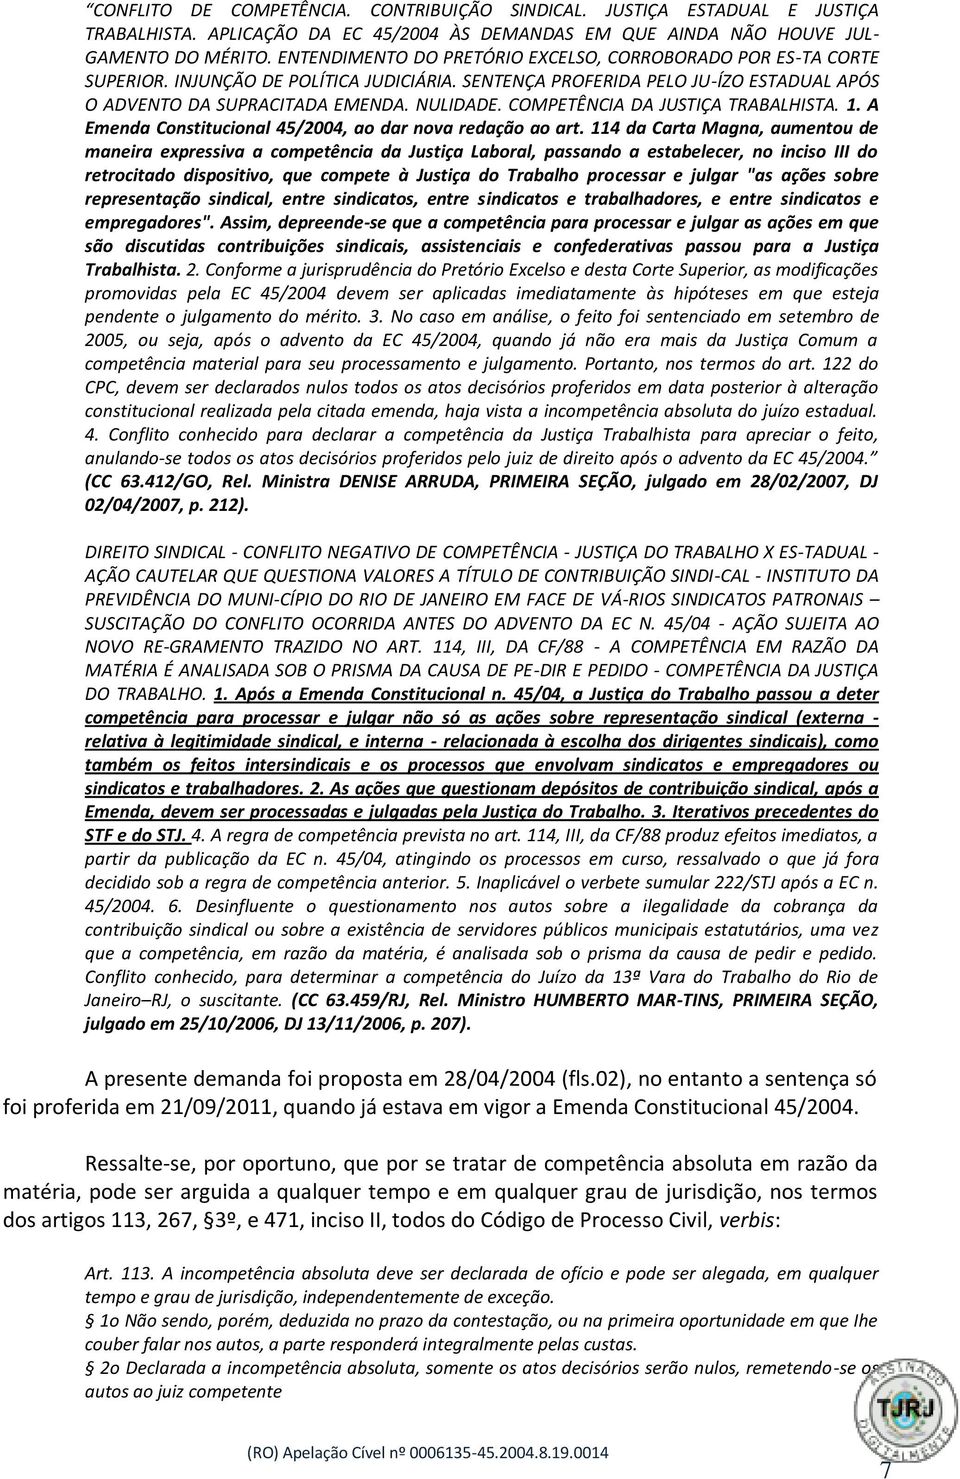 COMPETÊNCIA DA JUSTIÇA TRABALHISTA. 1. A Emenda Constitucional 45/2004, ao dar nova redação ao art.